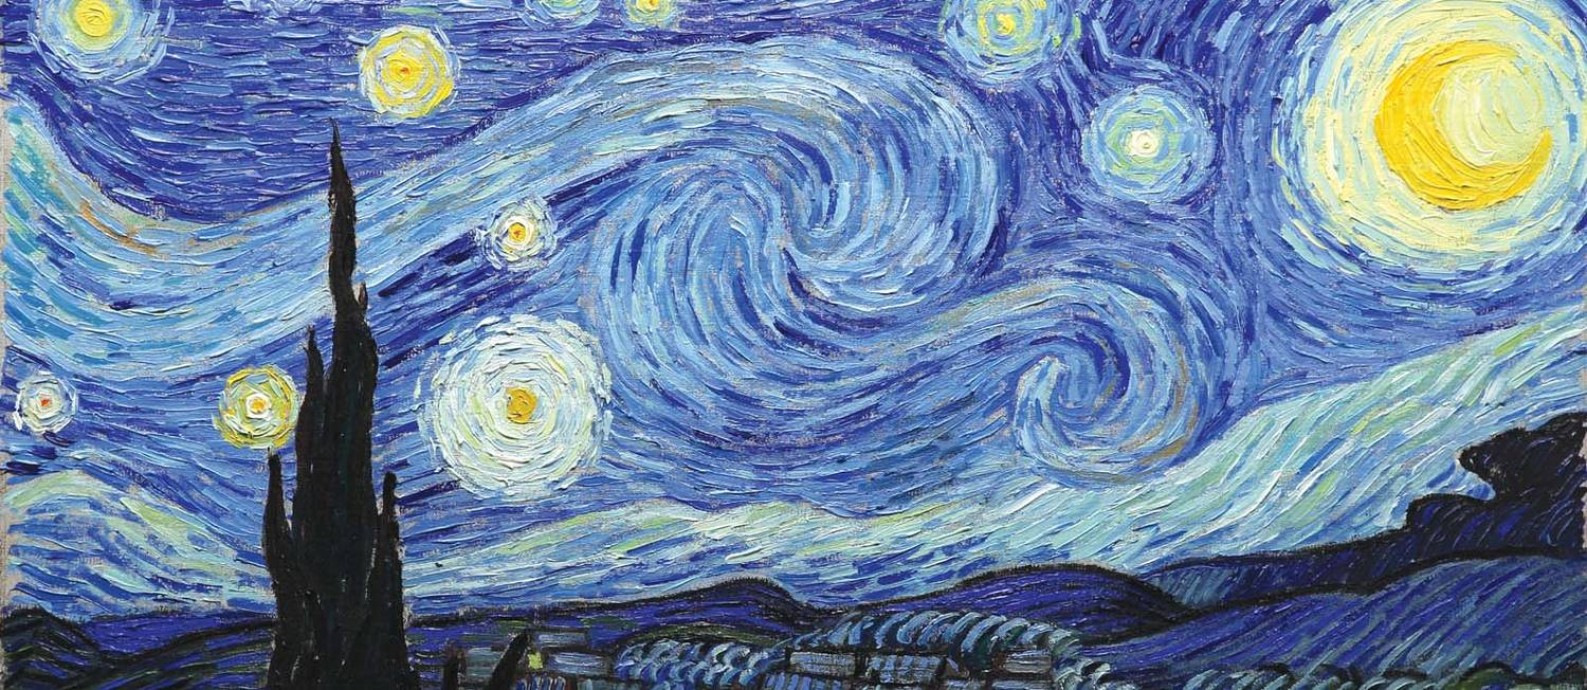 Noite Estrelada, obra de arte mais famosa de Vincent Van Gogh